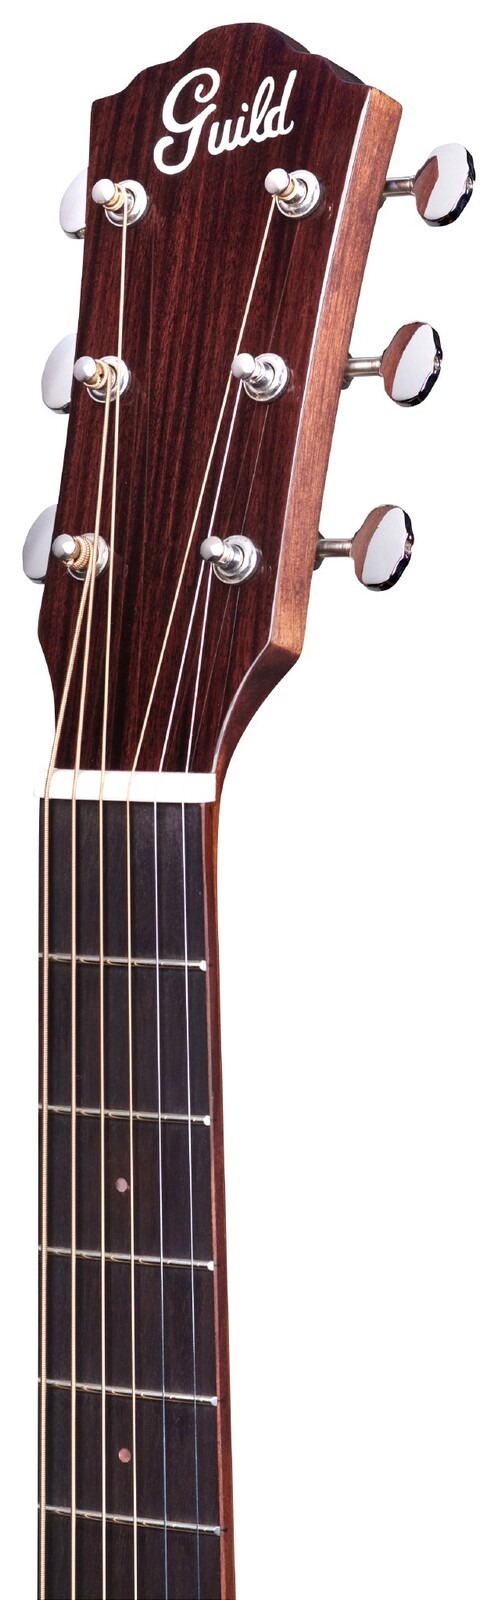 Guild DS-240E Memoir Series Vintage Sunburst Acoustic Guitar 4